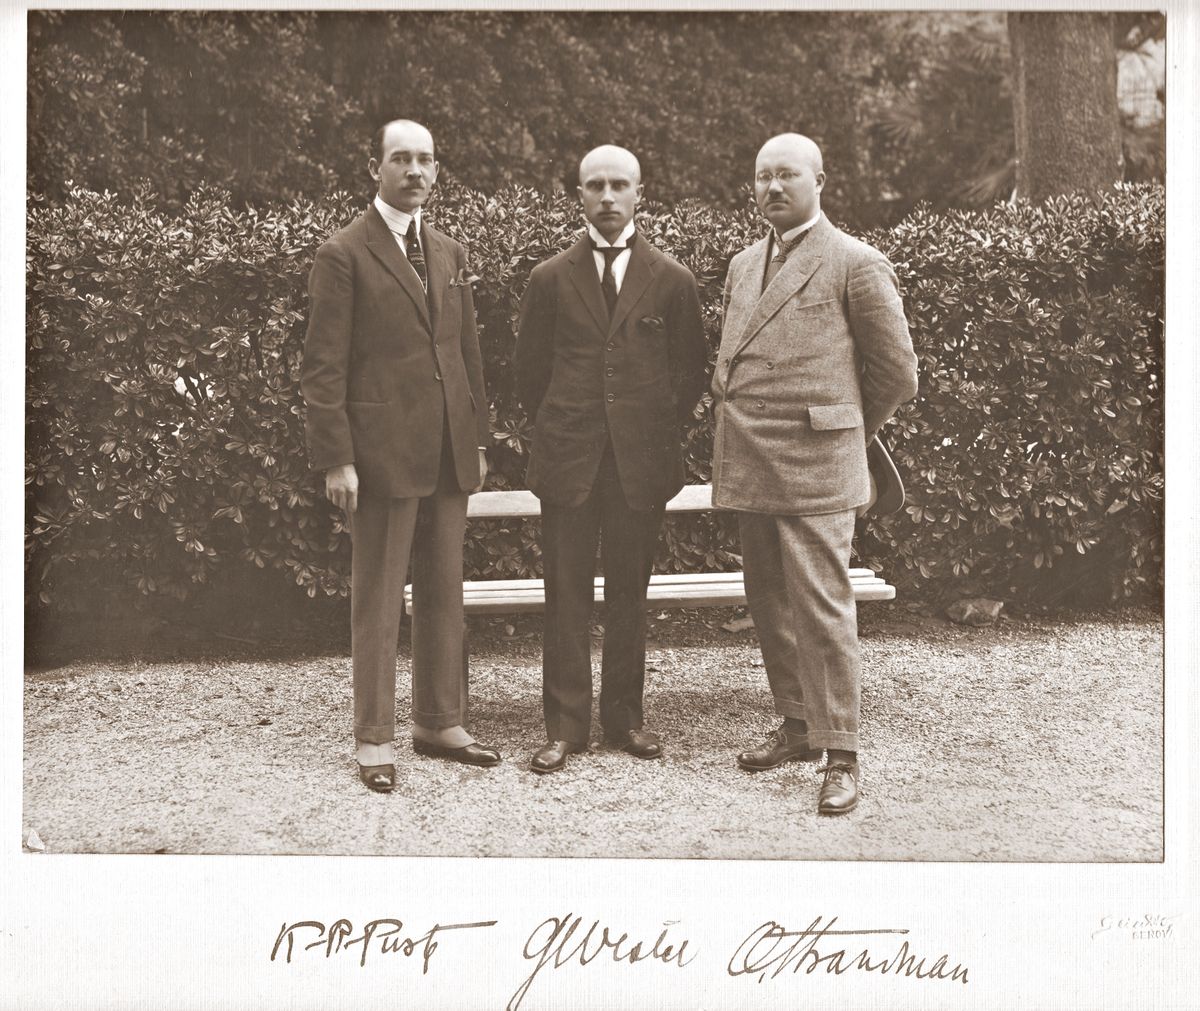 Eesti esindajad rahvusvahelisel majandus- ja rahanduskonverentsil Genovas kevadel 1922.Vasakult: Karl Robert Pusta, Georg Vestel ja Otto Strandman